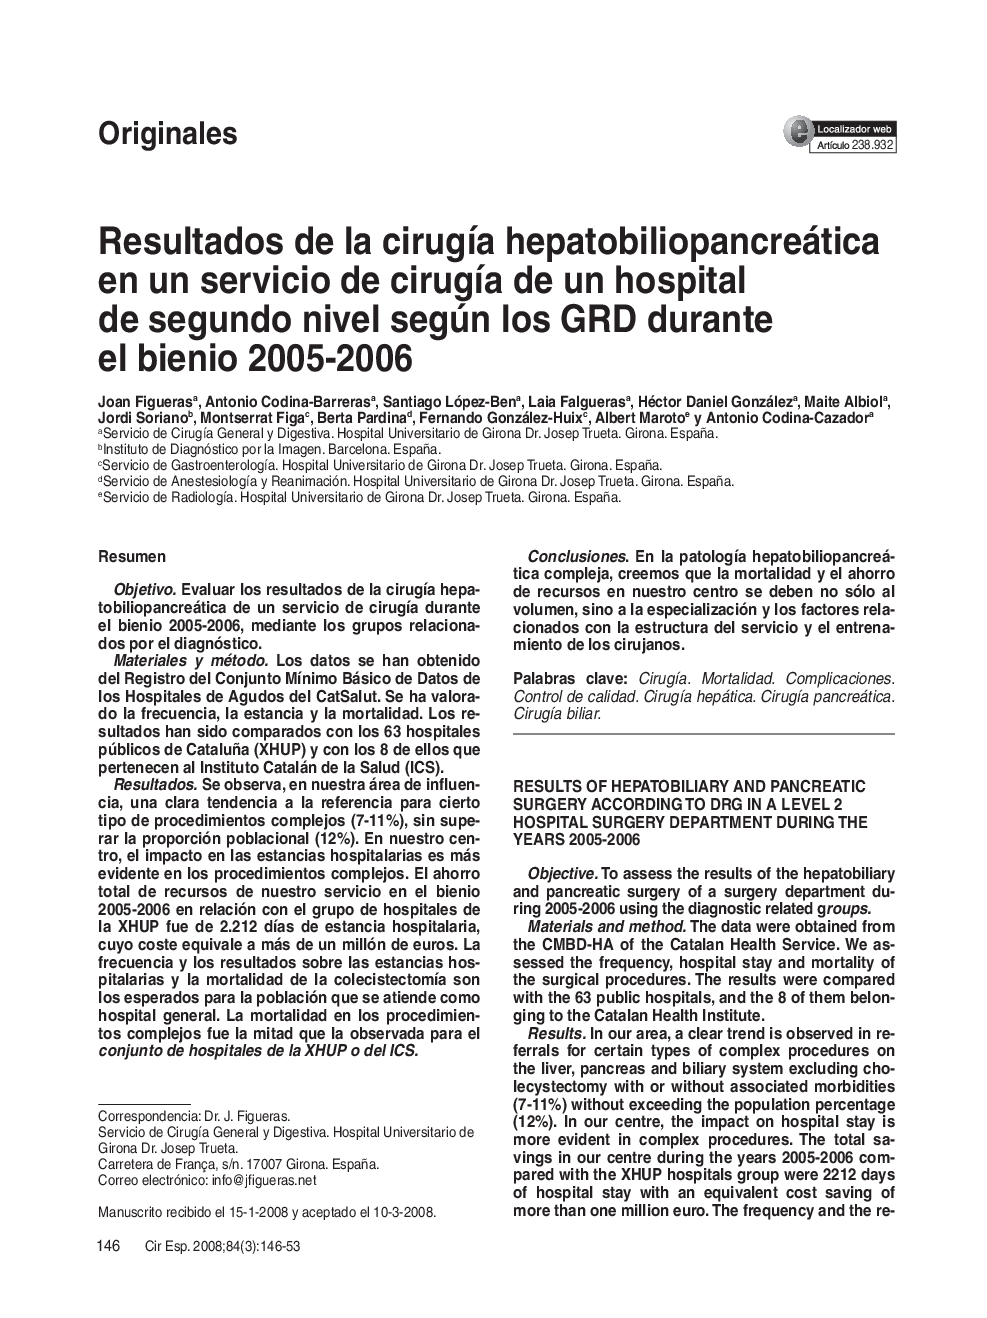 Resultados de la cirugía hepatobiliopancreática en un servicio de cirugía de un hospital de segundo nivel según los GRD durante el bienio 2005-2006